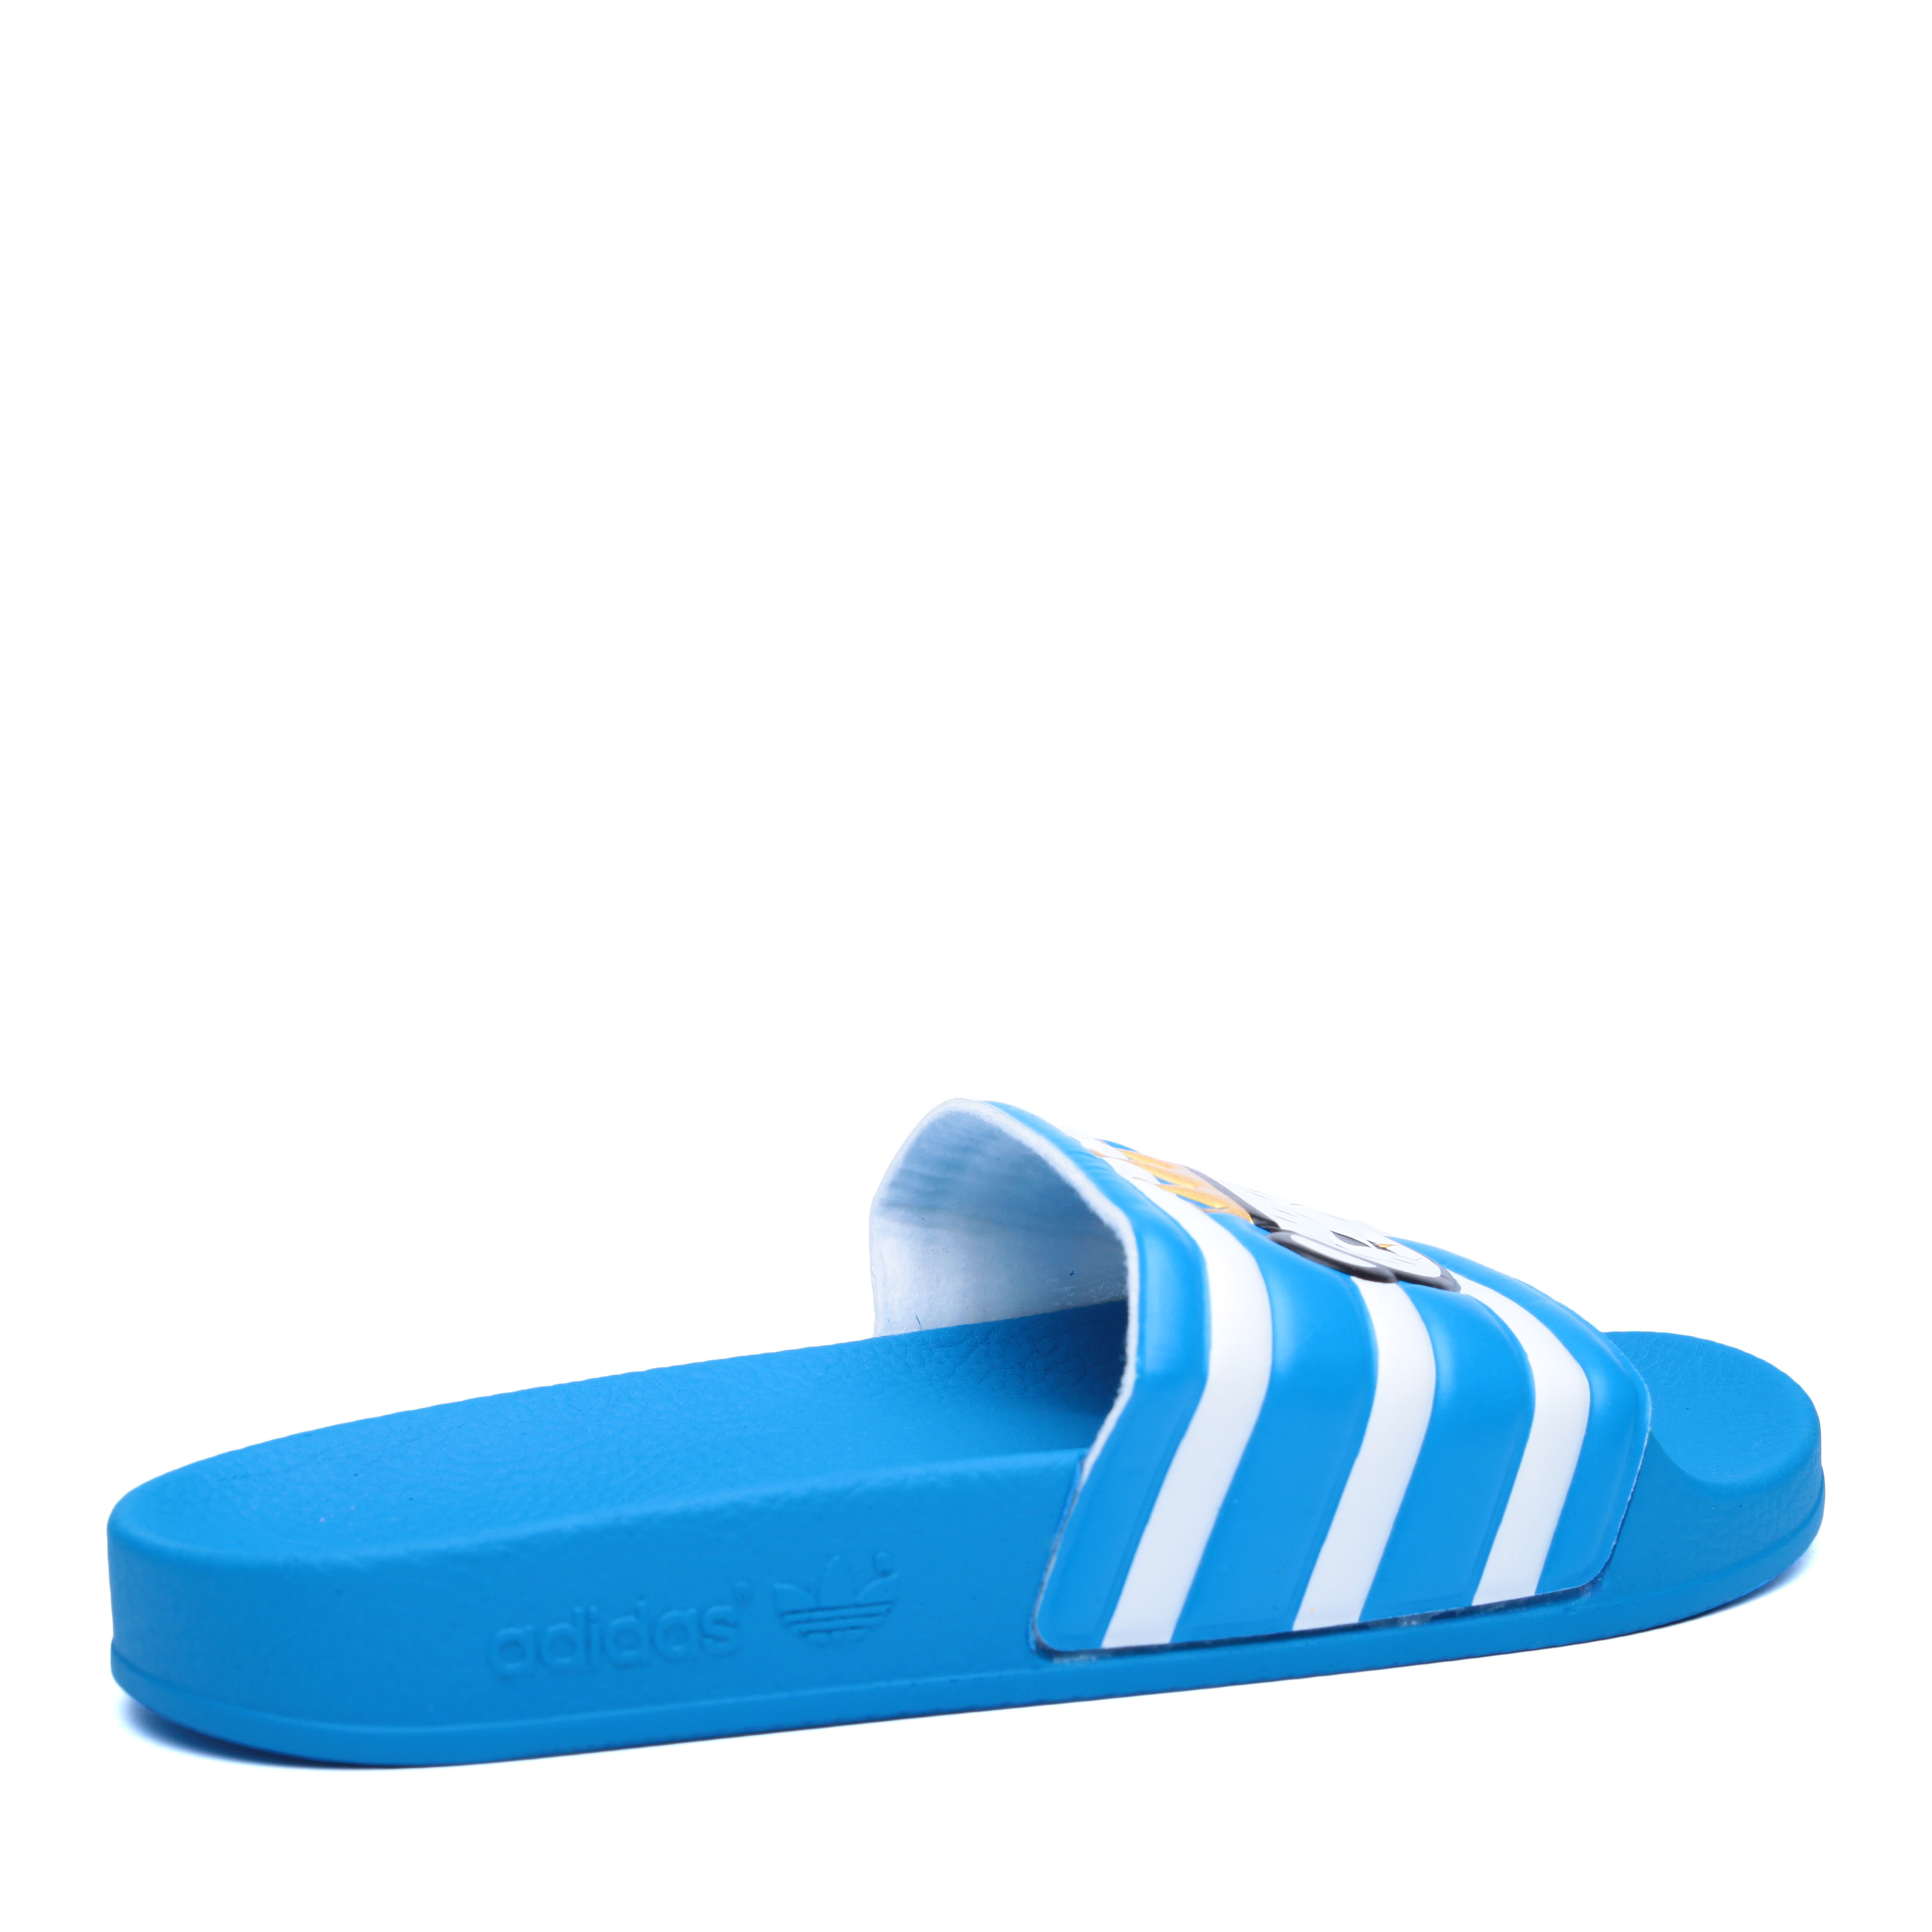  голубые сланцы adidas Adilette Nigo S75558 - цена, описание, фото 2